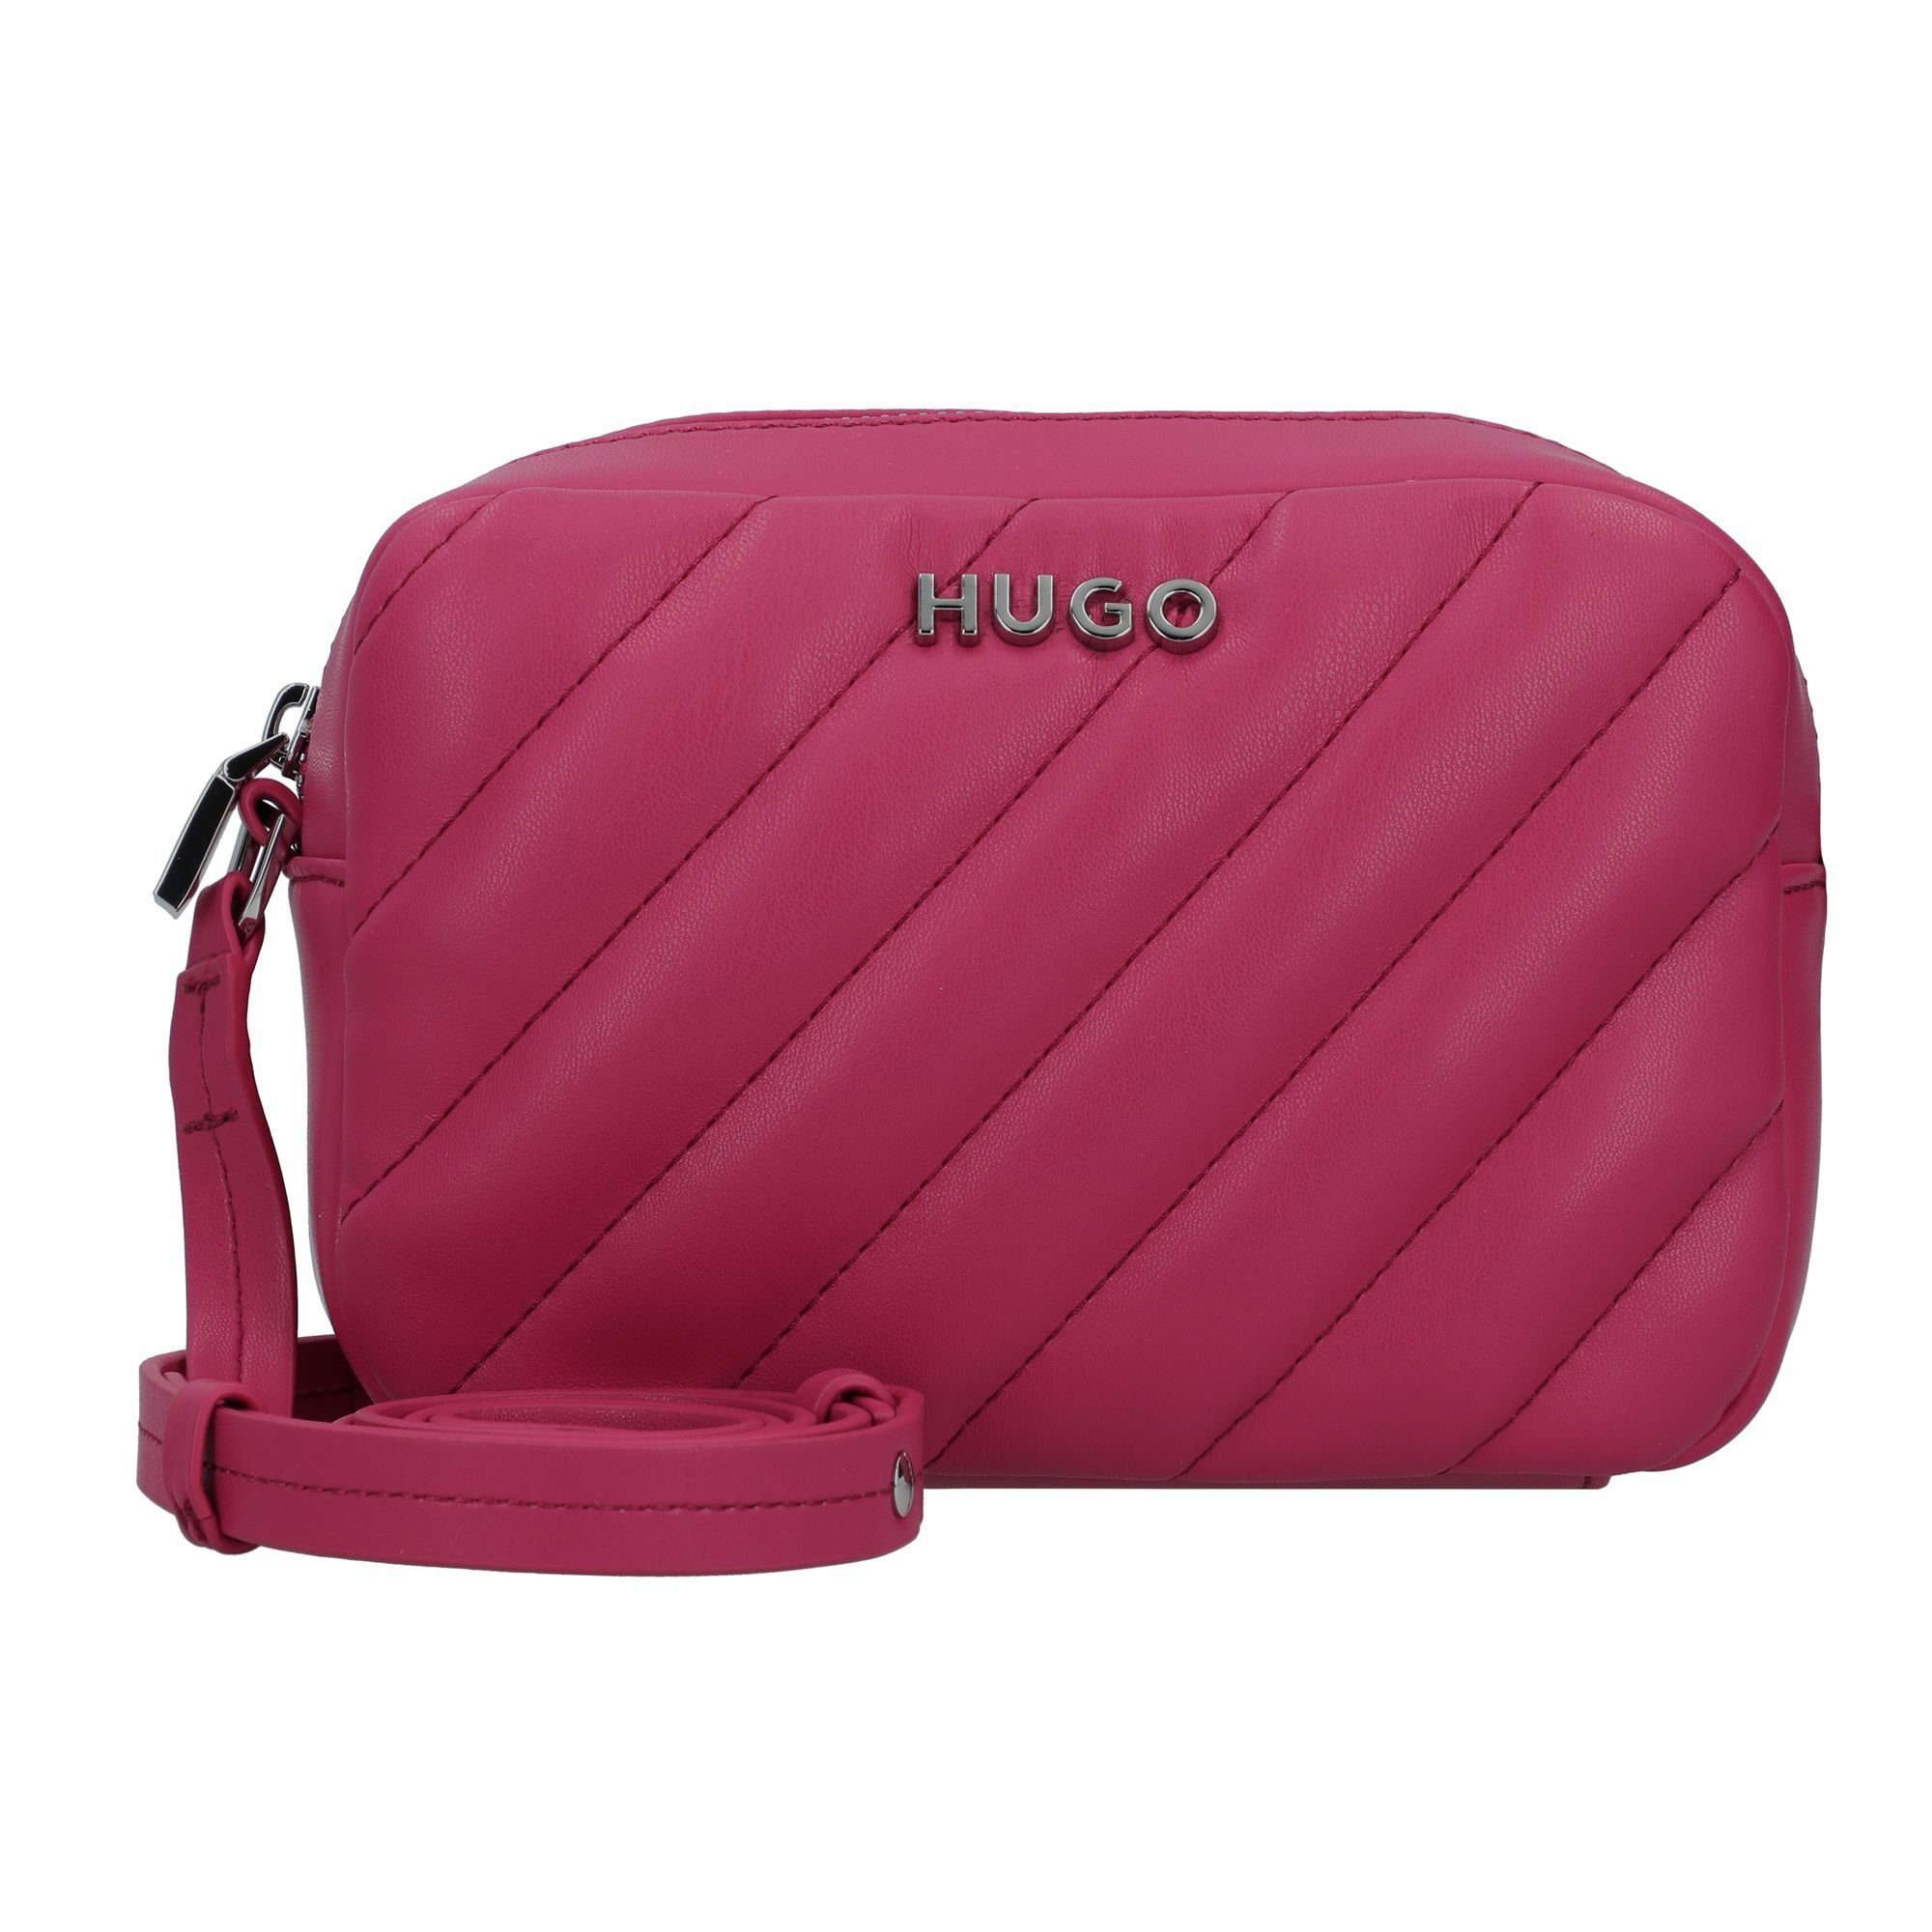 Hugo Boss Damen Umhängetaschen online kaufen | OTTO | Umhängetaschen